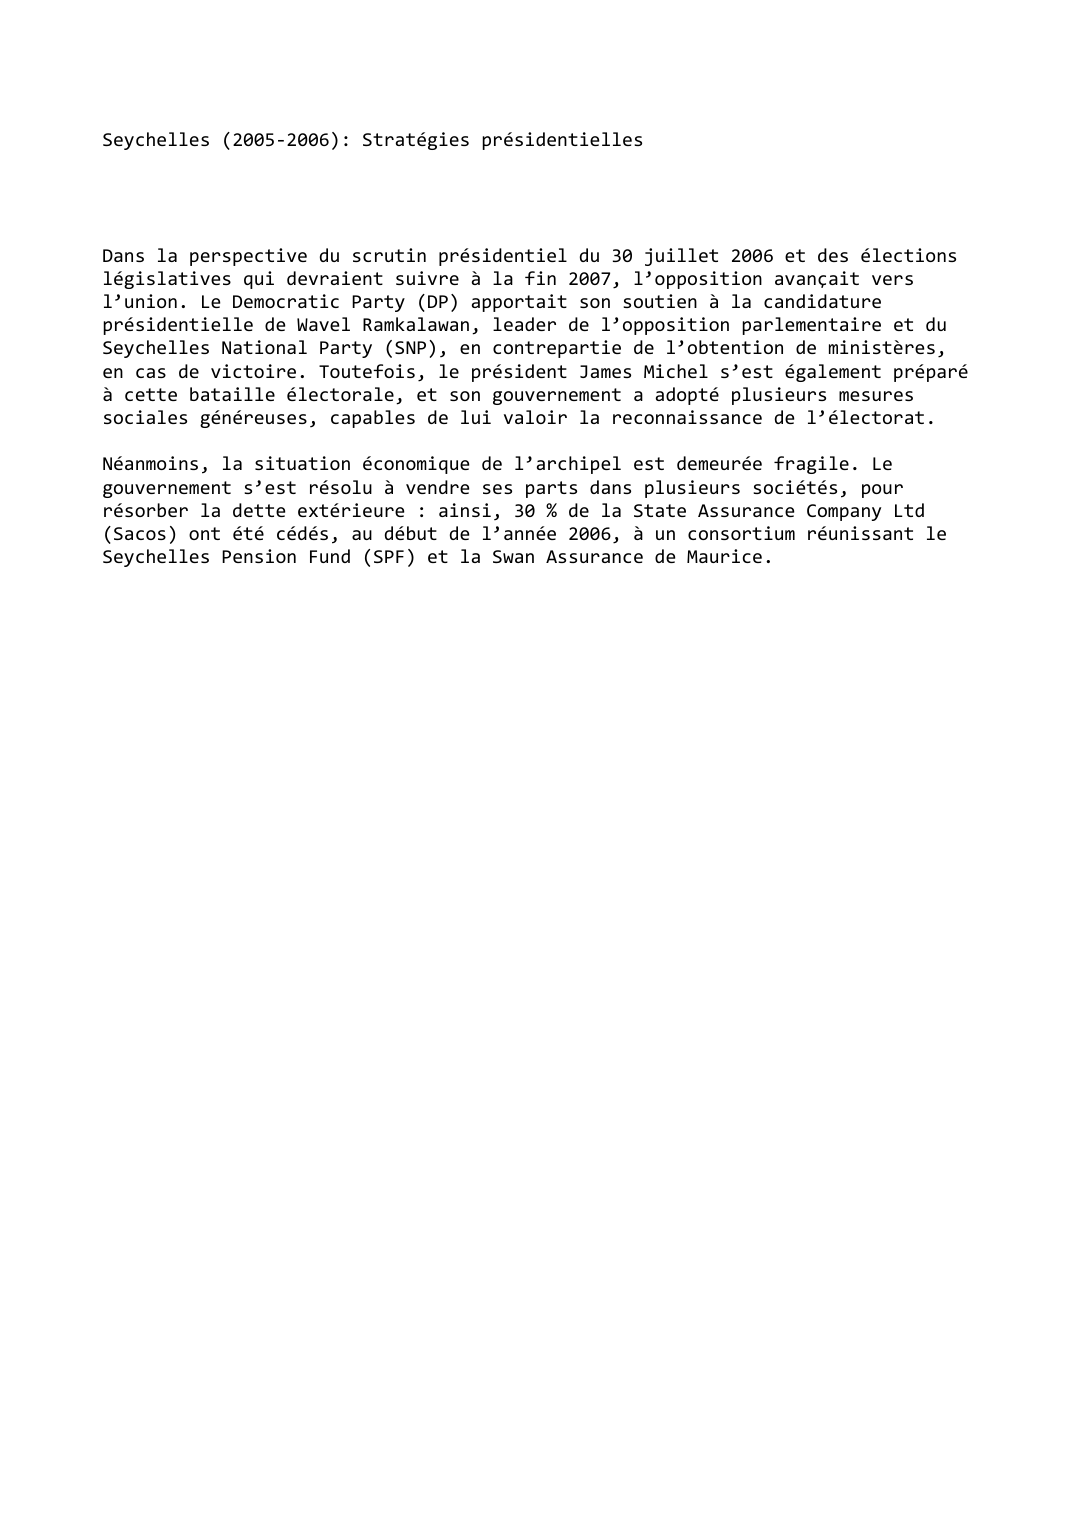 Prévisualisation du document Seychelles (2005-2006): Stratégies présidentielles